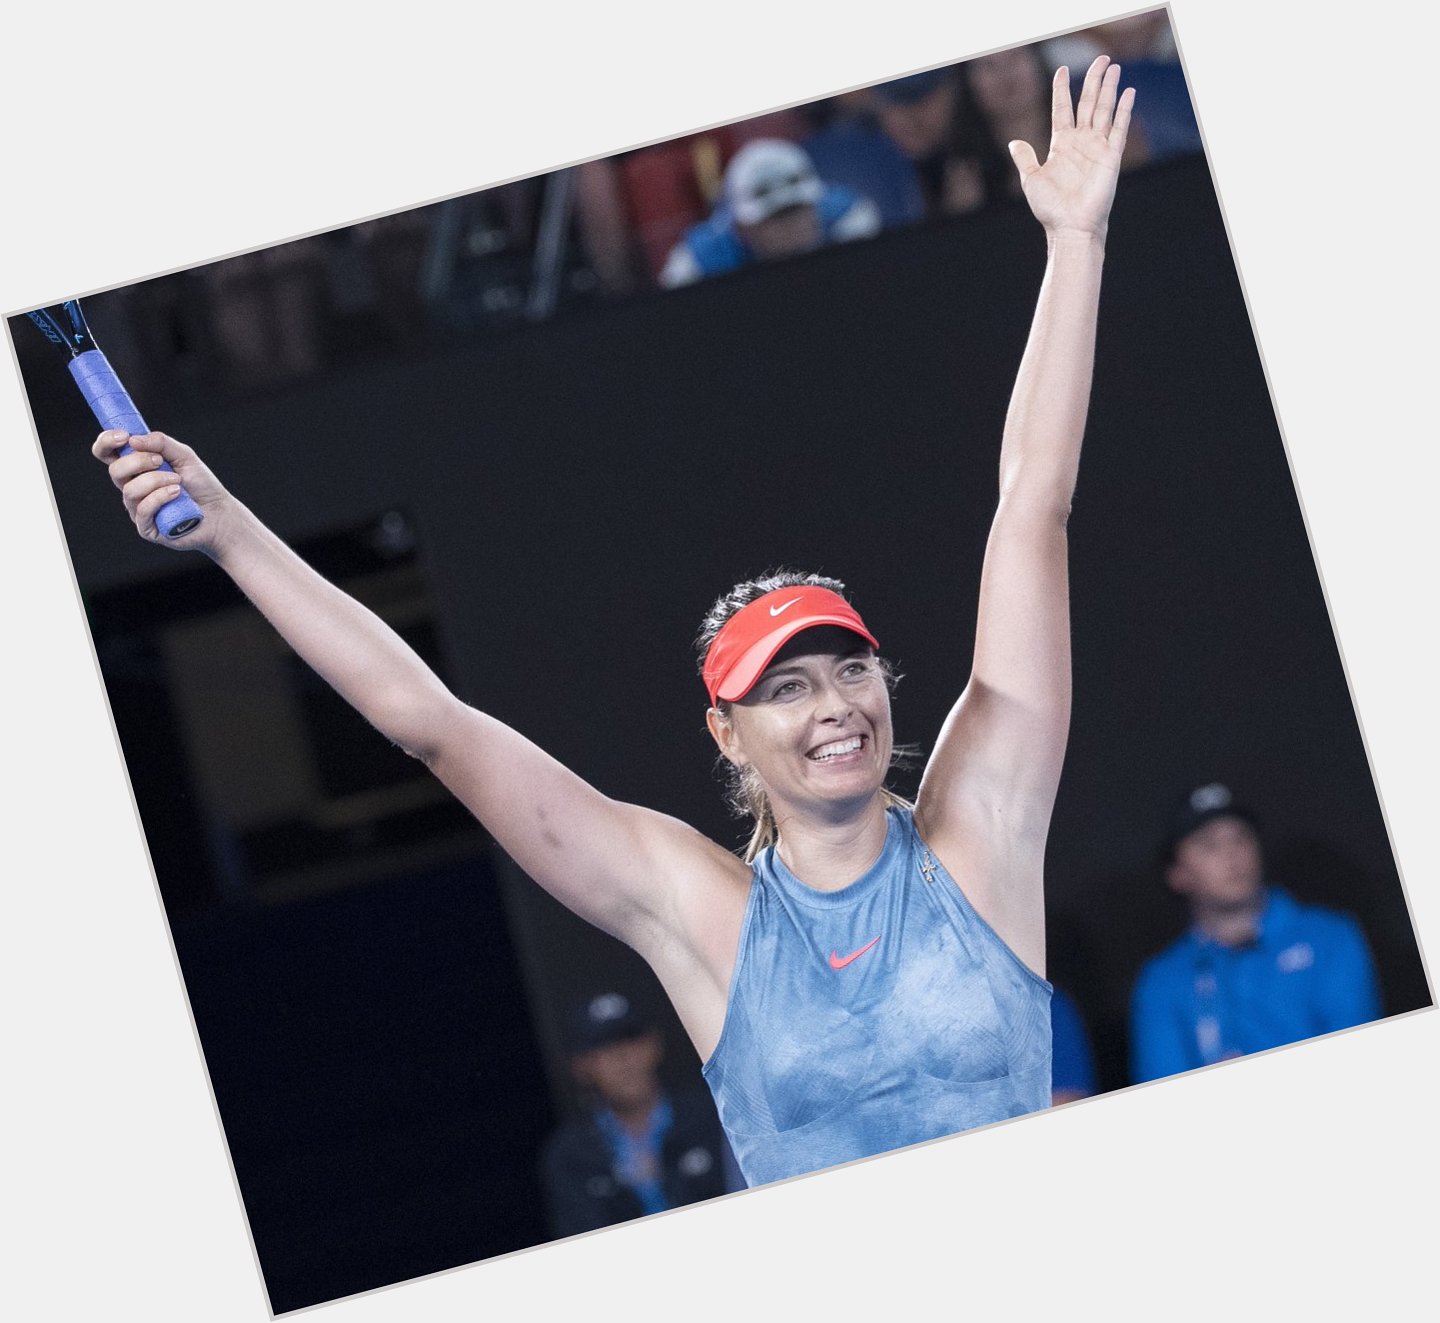  We wish an Happy Birthday to Maria Sharapova, turning 32 today! 